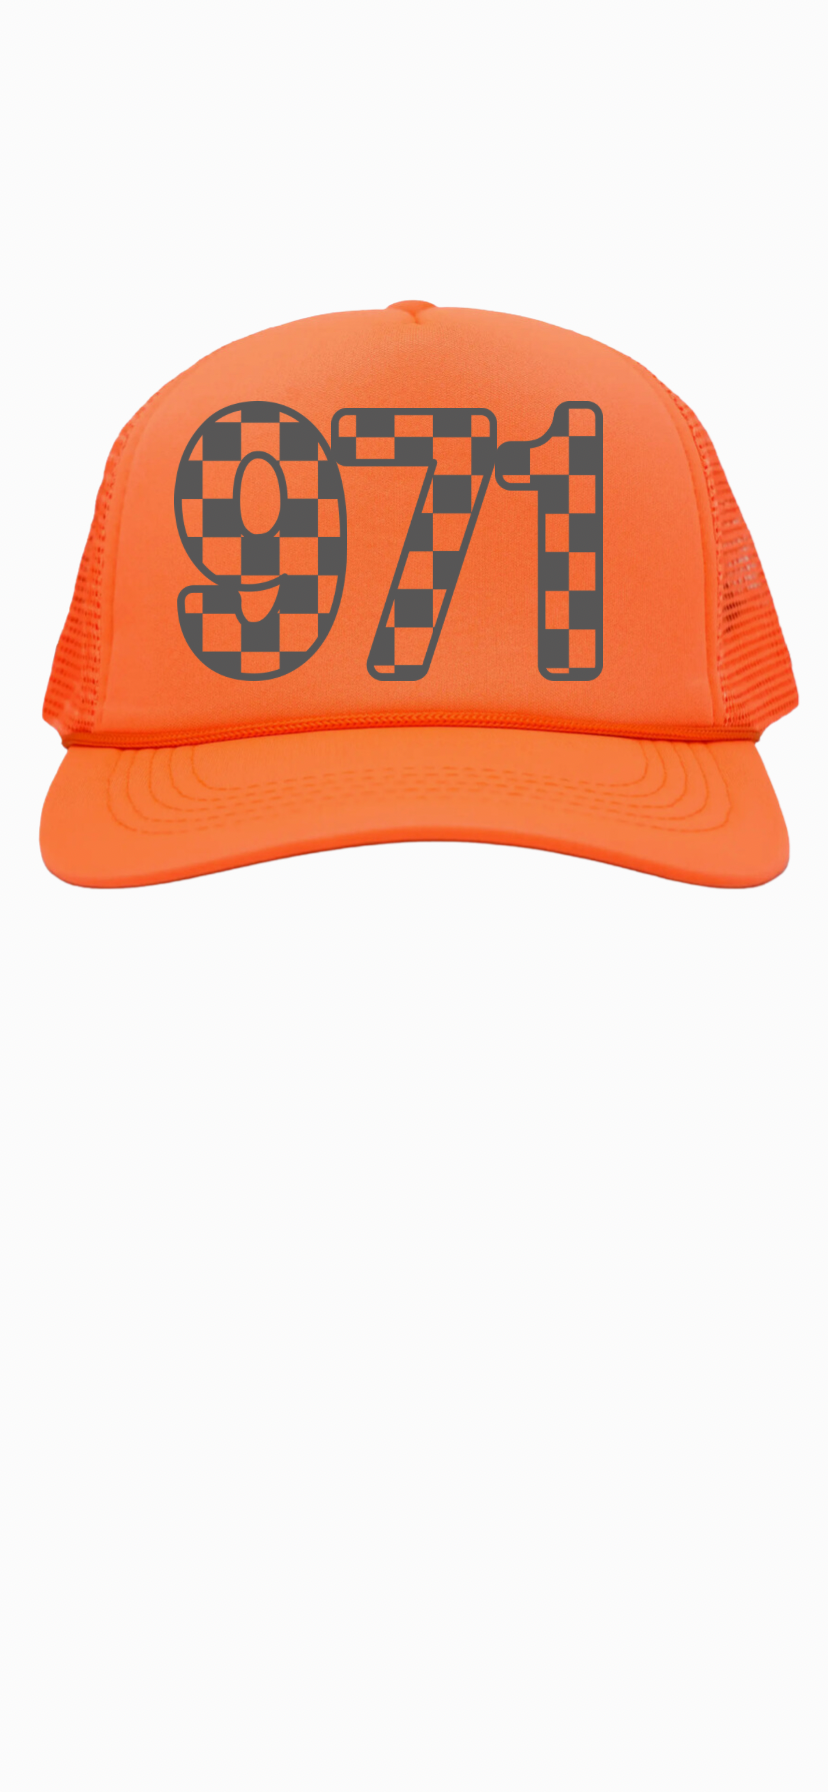 Checkered Design Trucker Hat